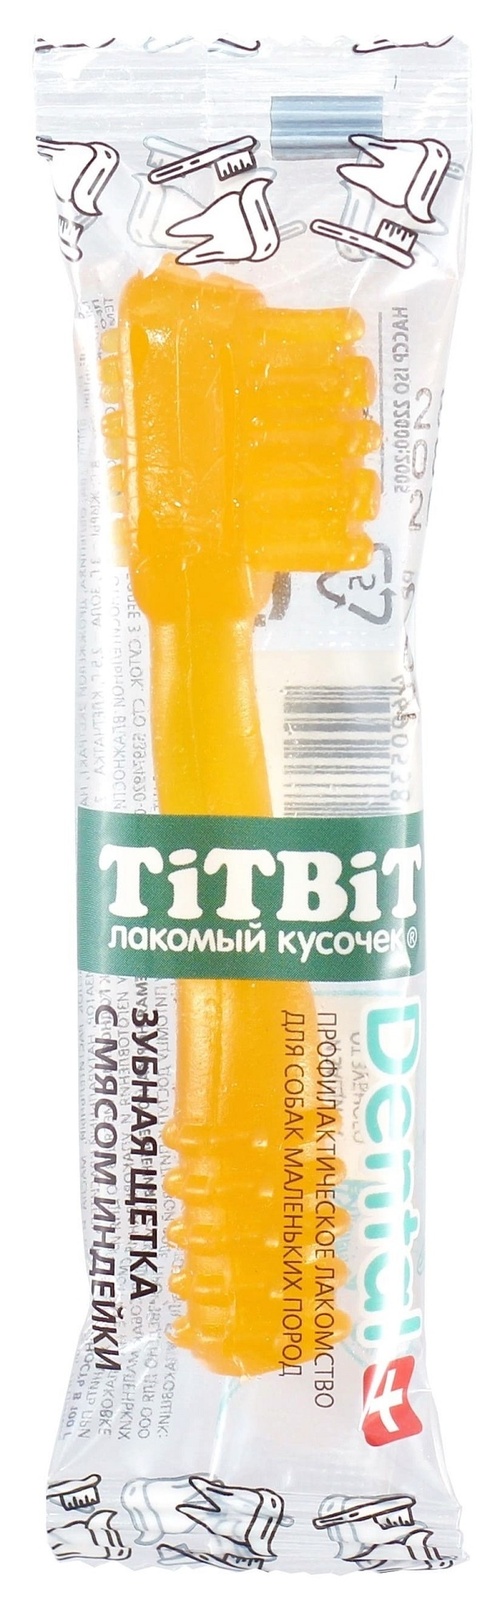 TiTBiT TiTBiT дЕНТАЛ+ Зубная щетка с мясом индейки для собак маленьких пород (13 г) titbit titbit дентал 3в1 с мятой для собак крупных пород 95 гр 95 гр